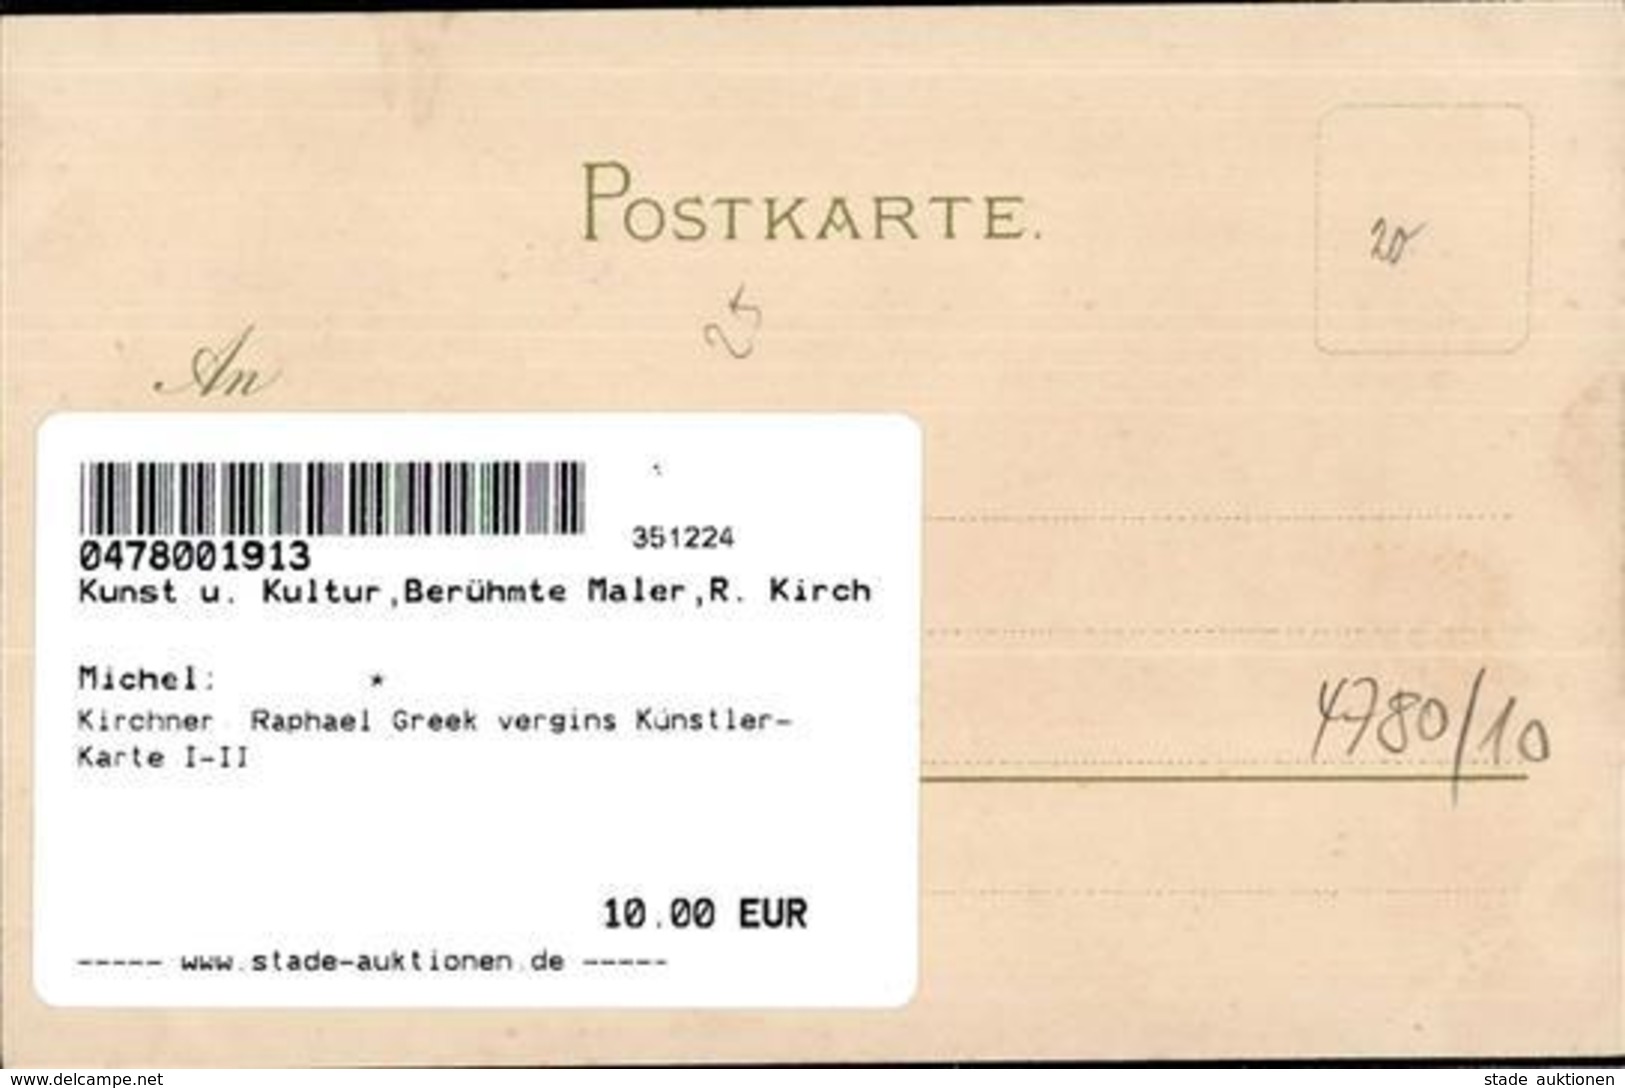 Kirchner, Raphael Greek Vergins Künstler-Karte I-II - Kirchner, Raphael